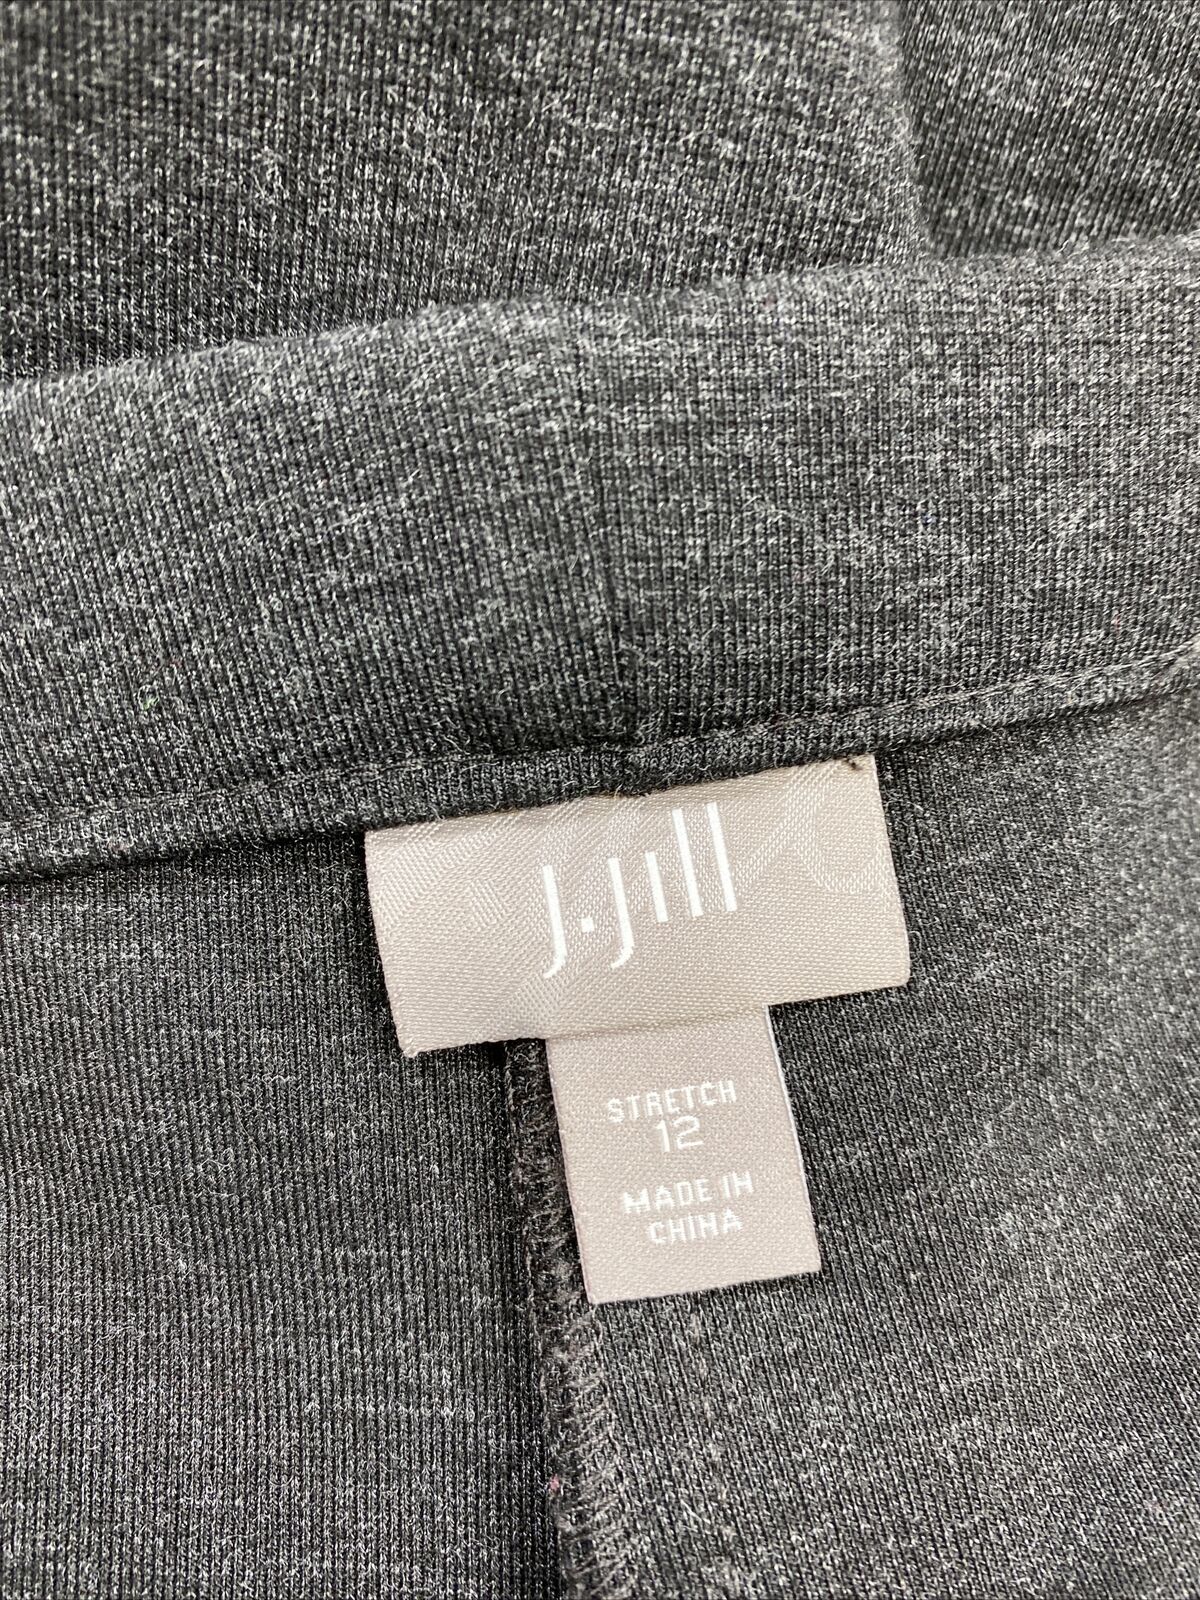 J.Jill Pantalones tobilleros elásticos con cremallera en gris oscuro para mujer - 12